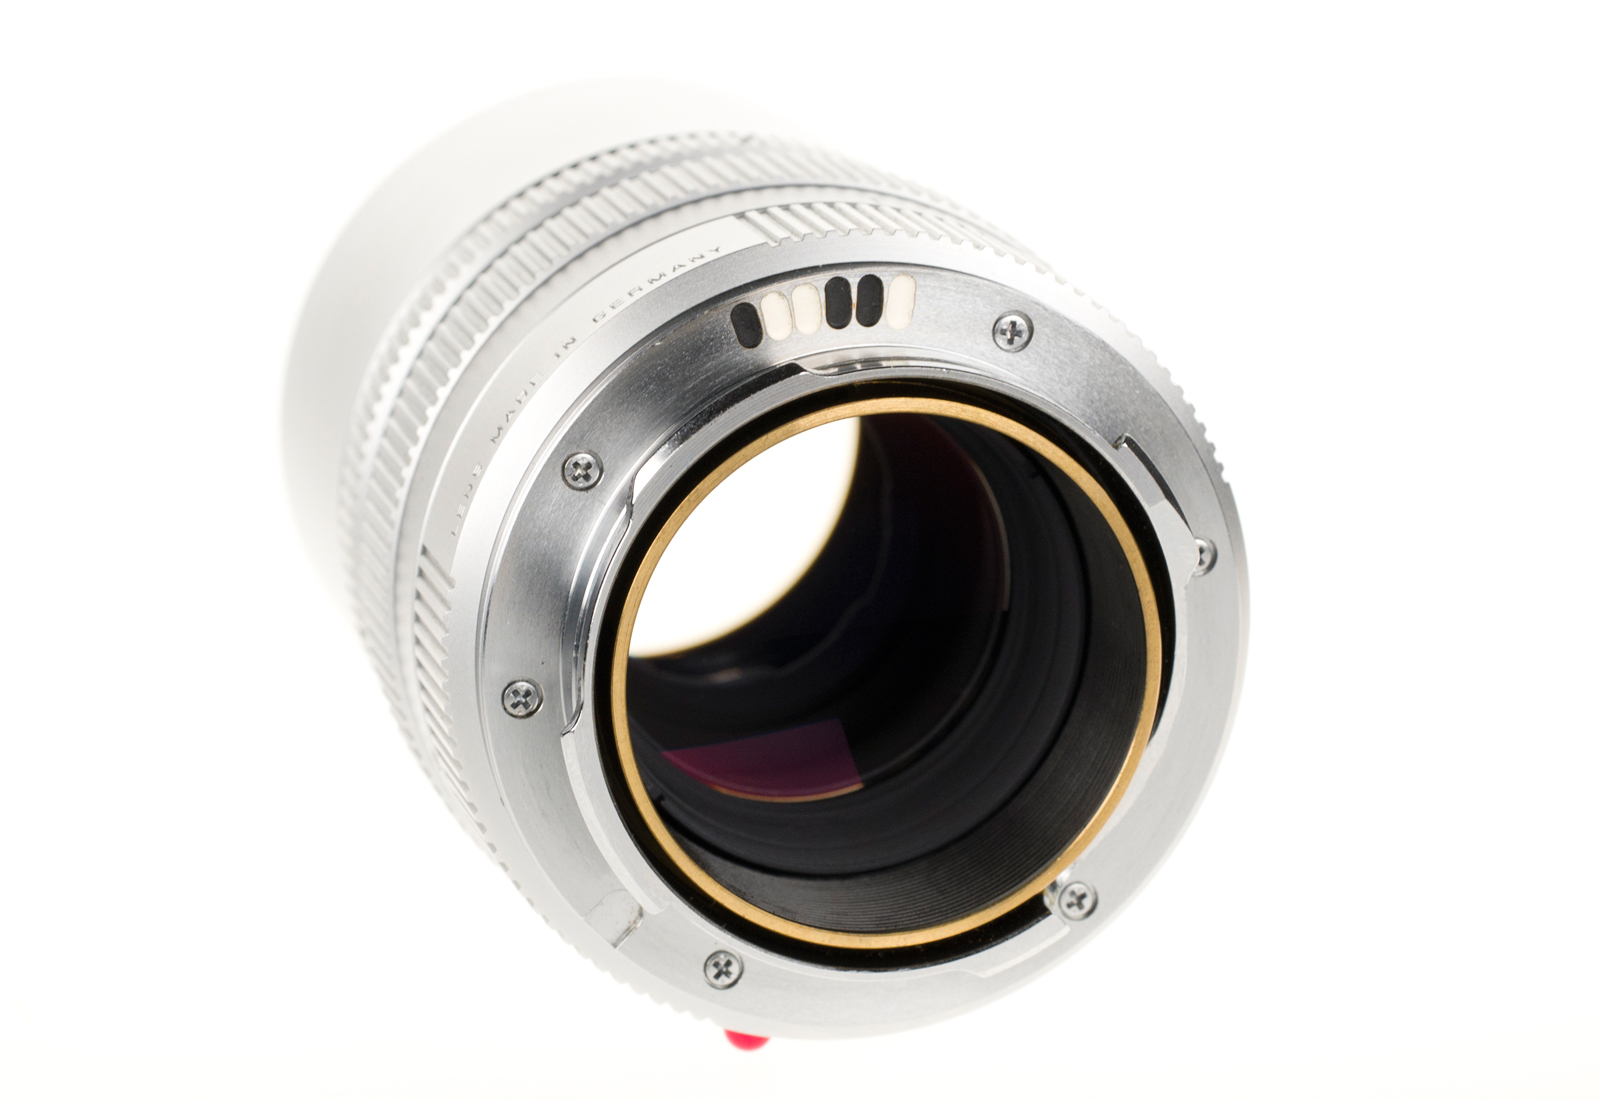 Leica Elmarit-M 1:2,8/90mm, chrome